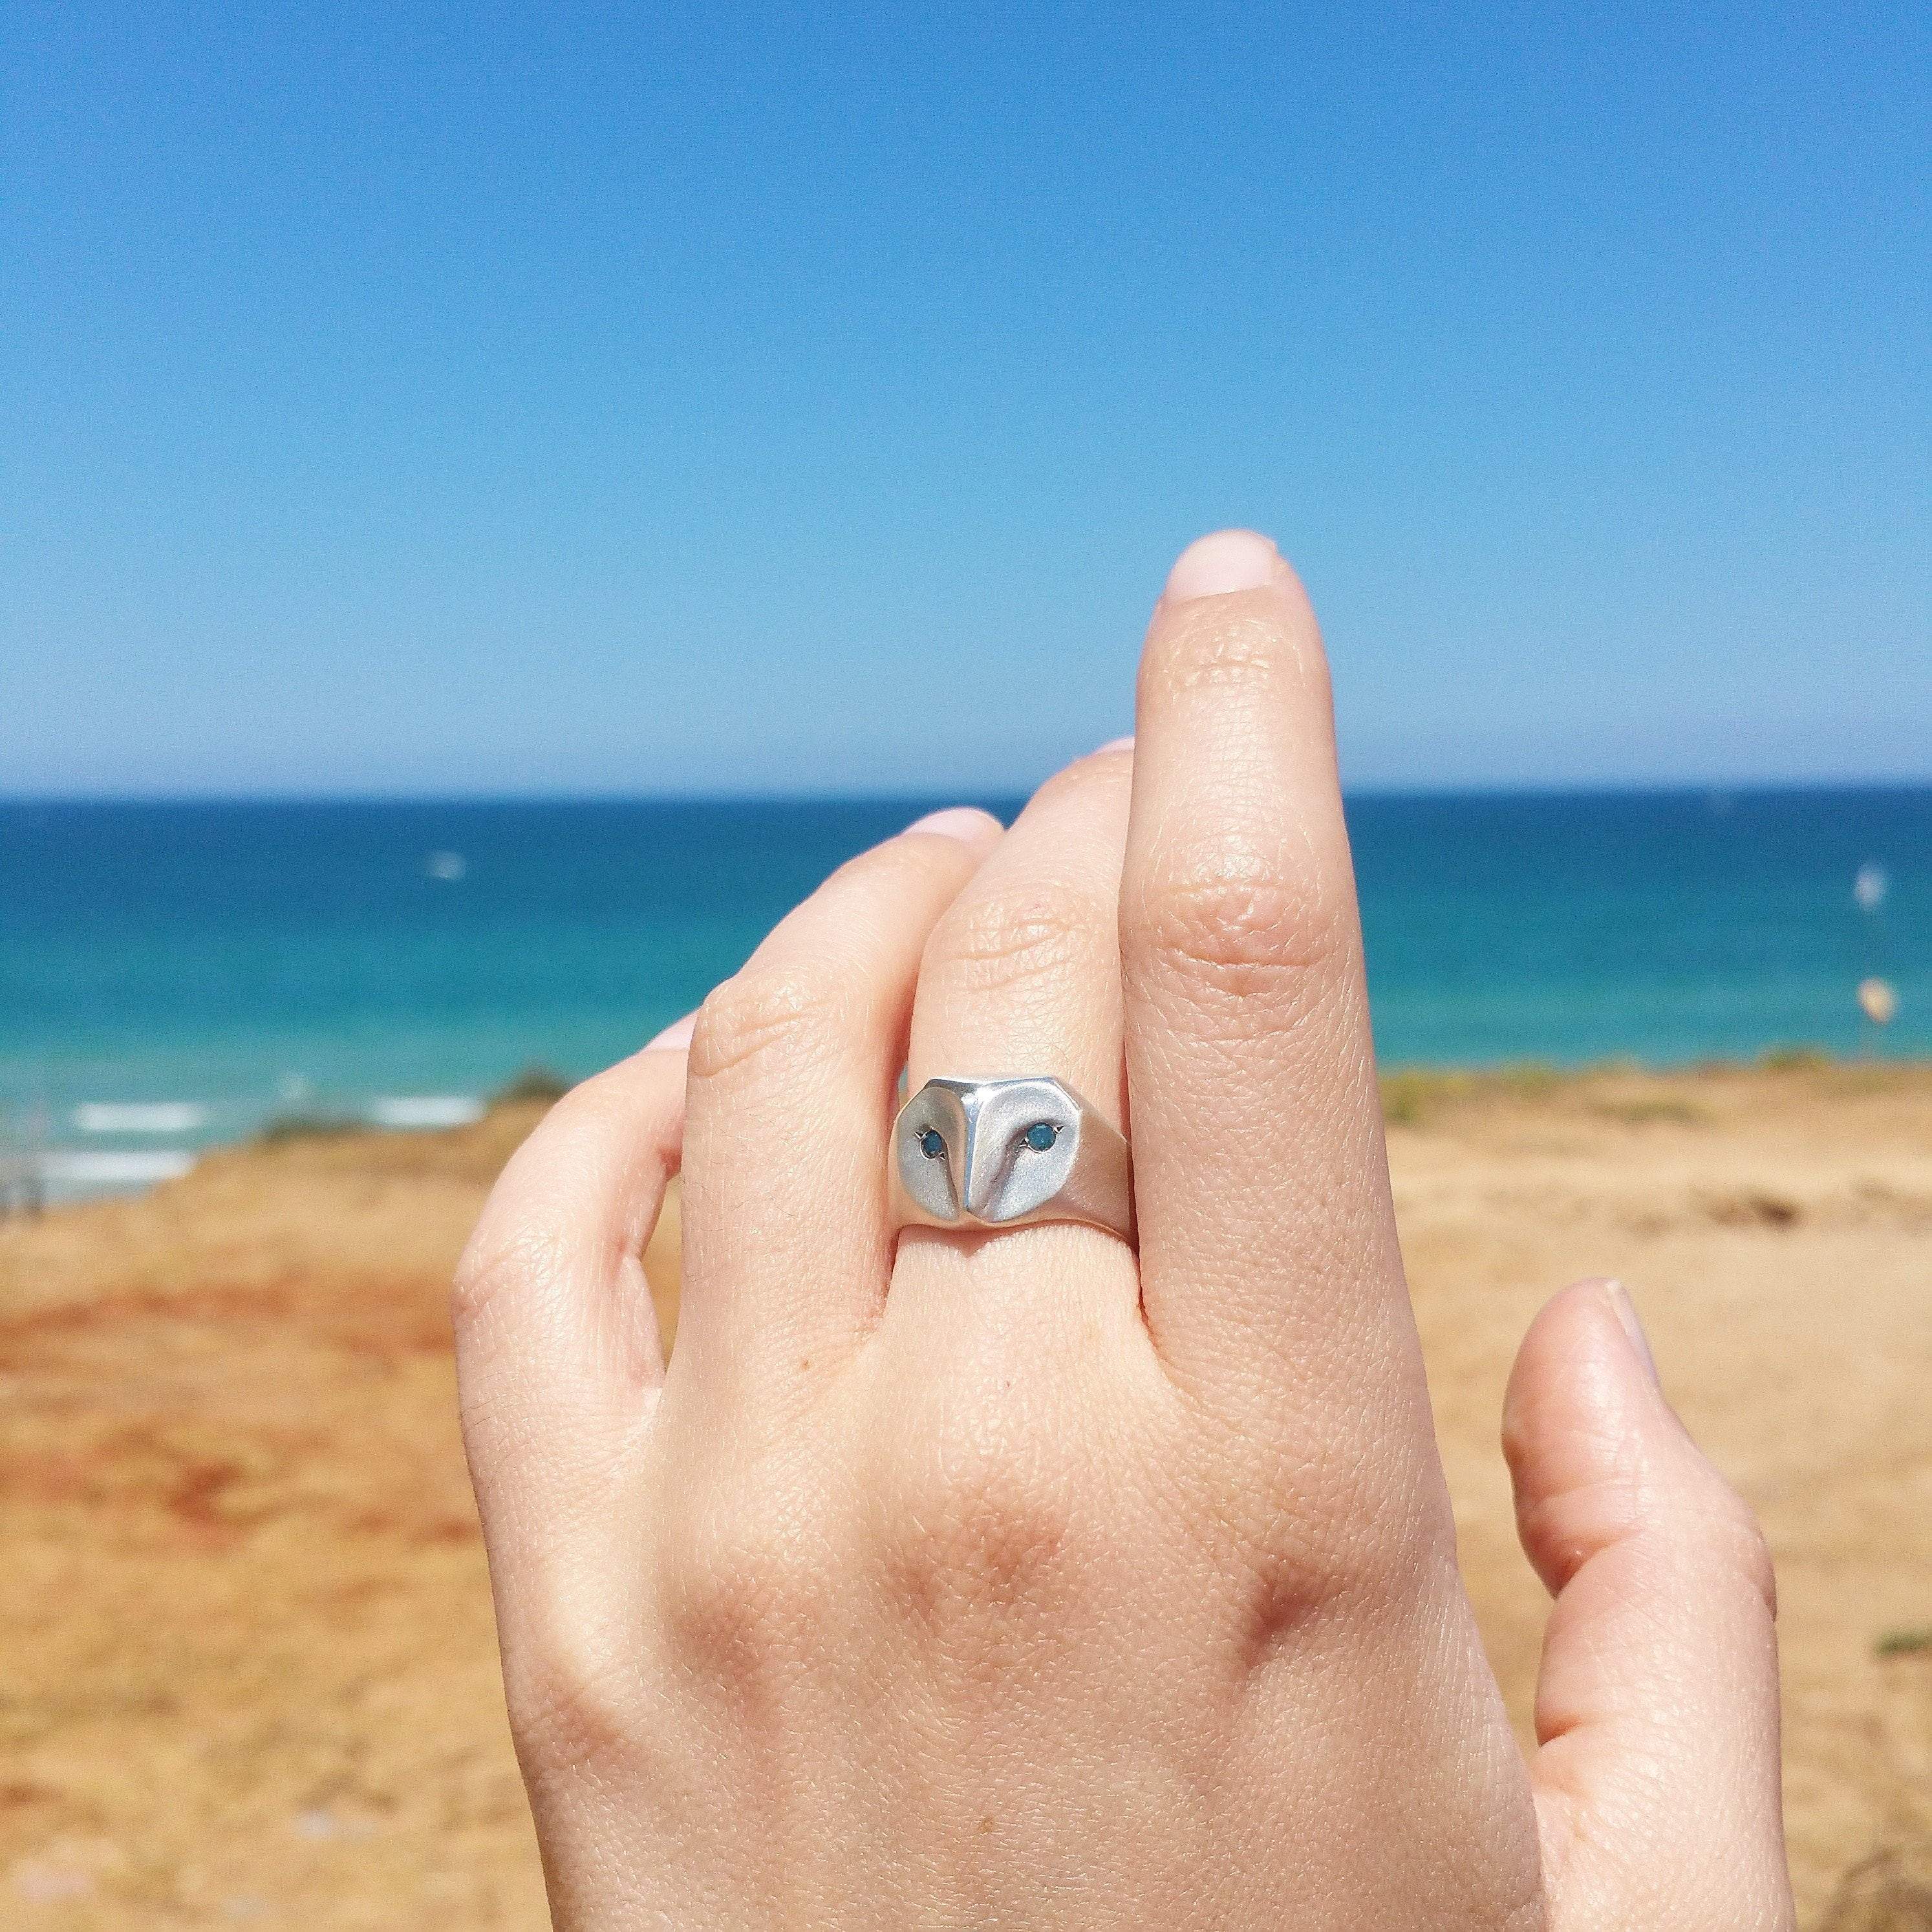 ELINA GLEIZER  Jewelry Owl Ring with Ocean Blue Diamonds